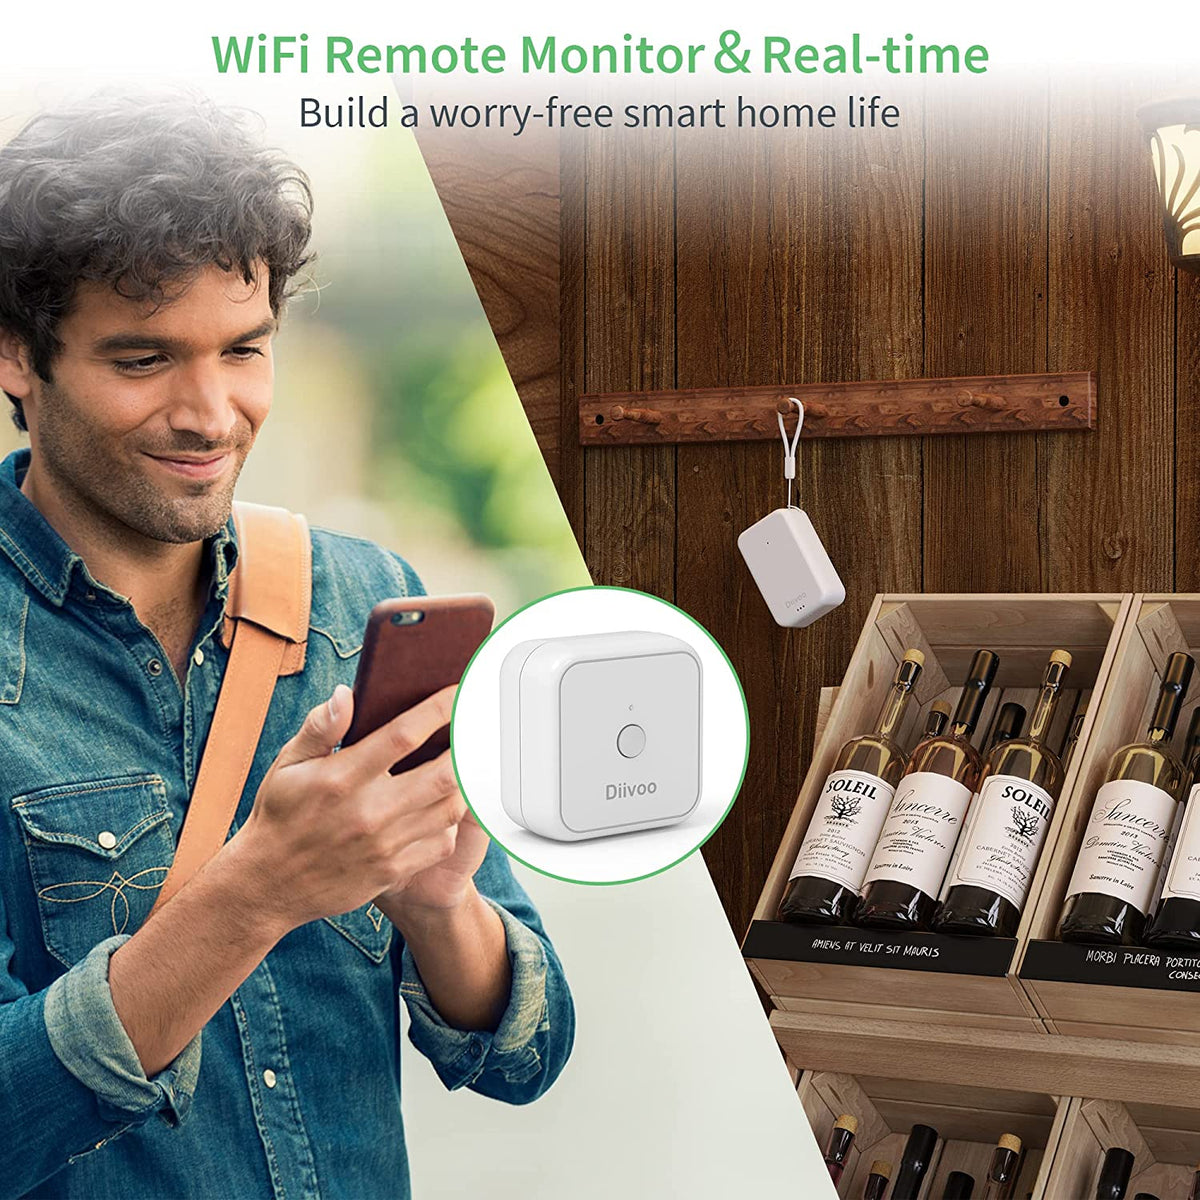 Termómetro higrómetro digital WiFi, compatible con Alexa – WSD400A